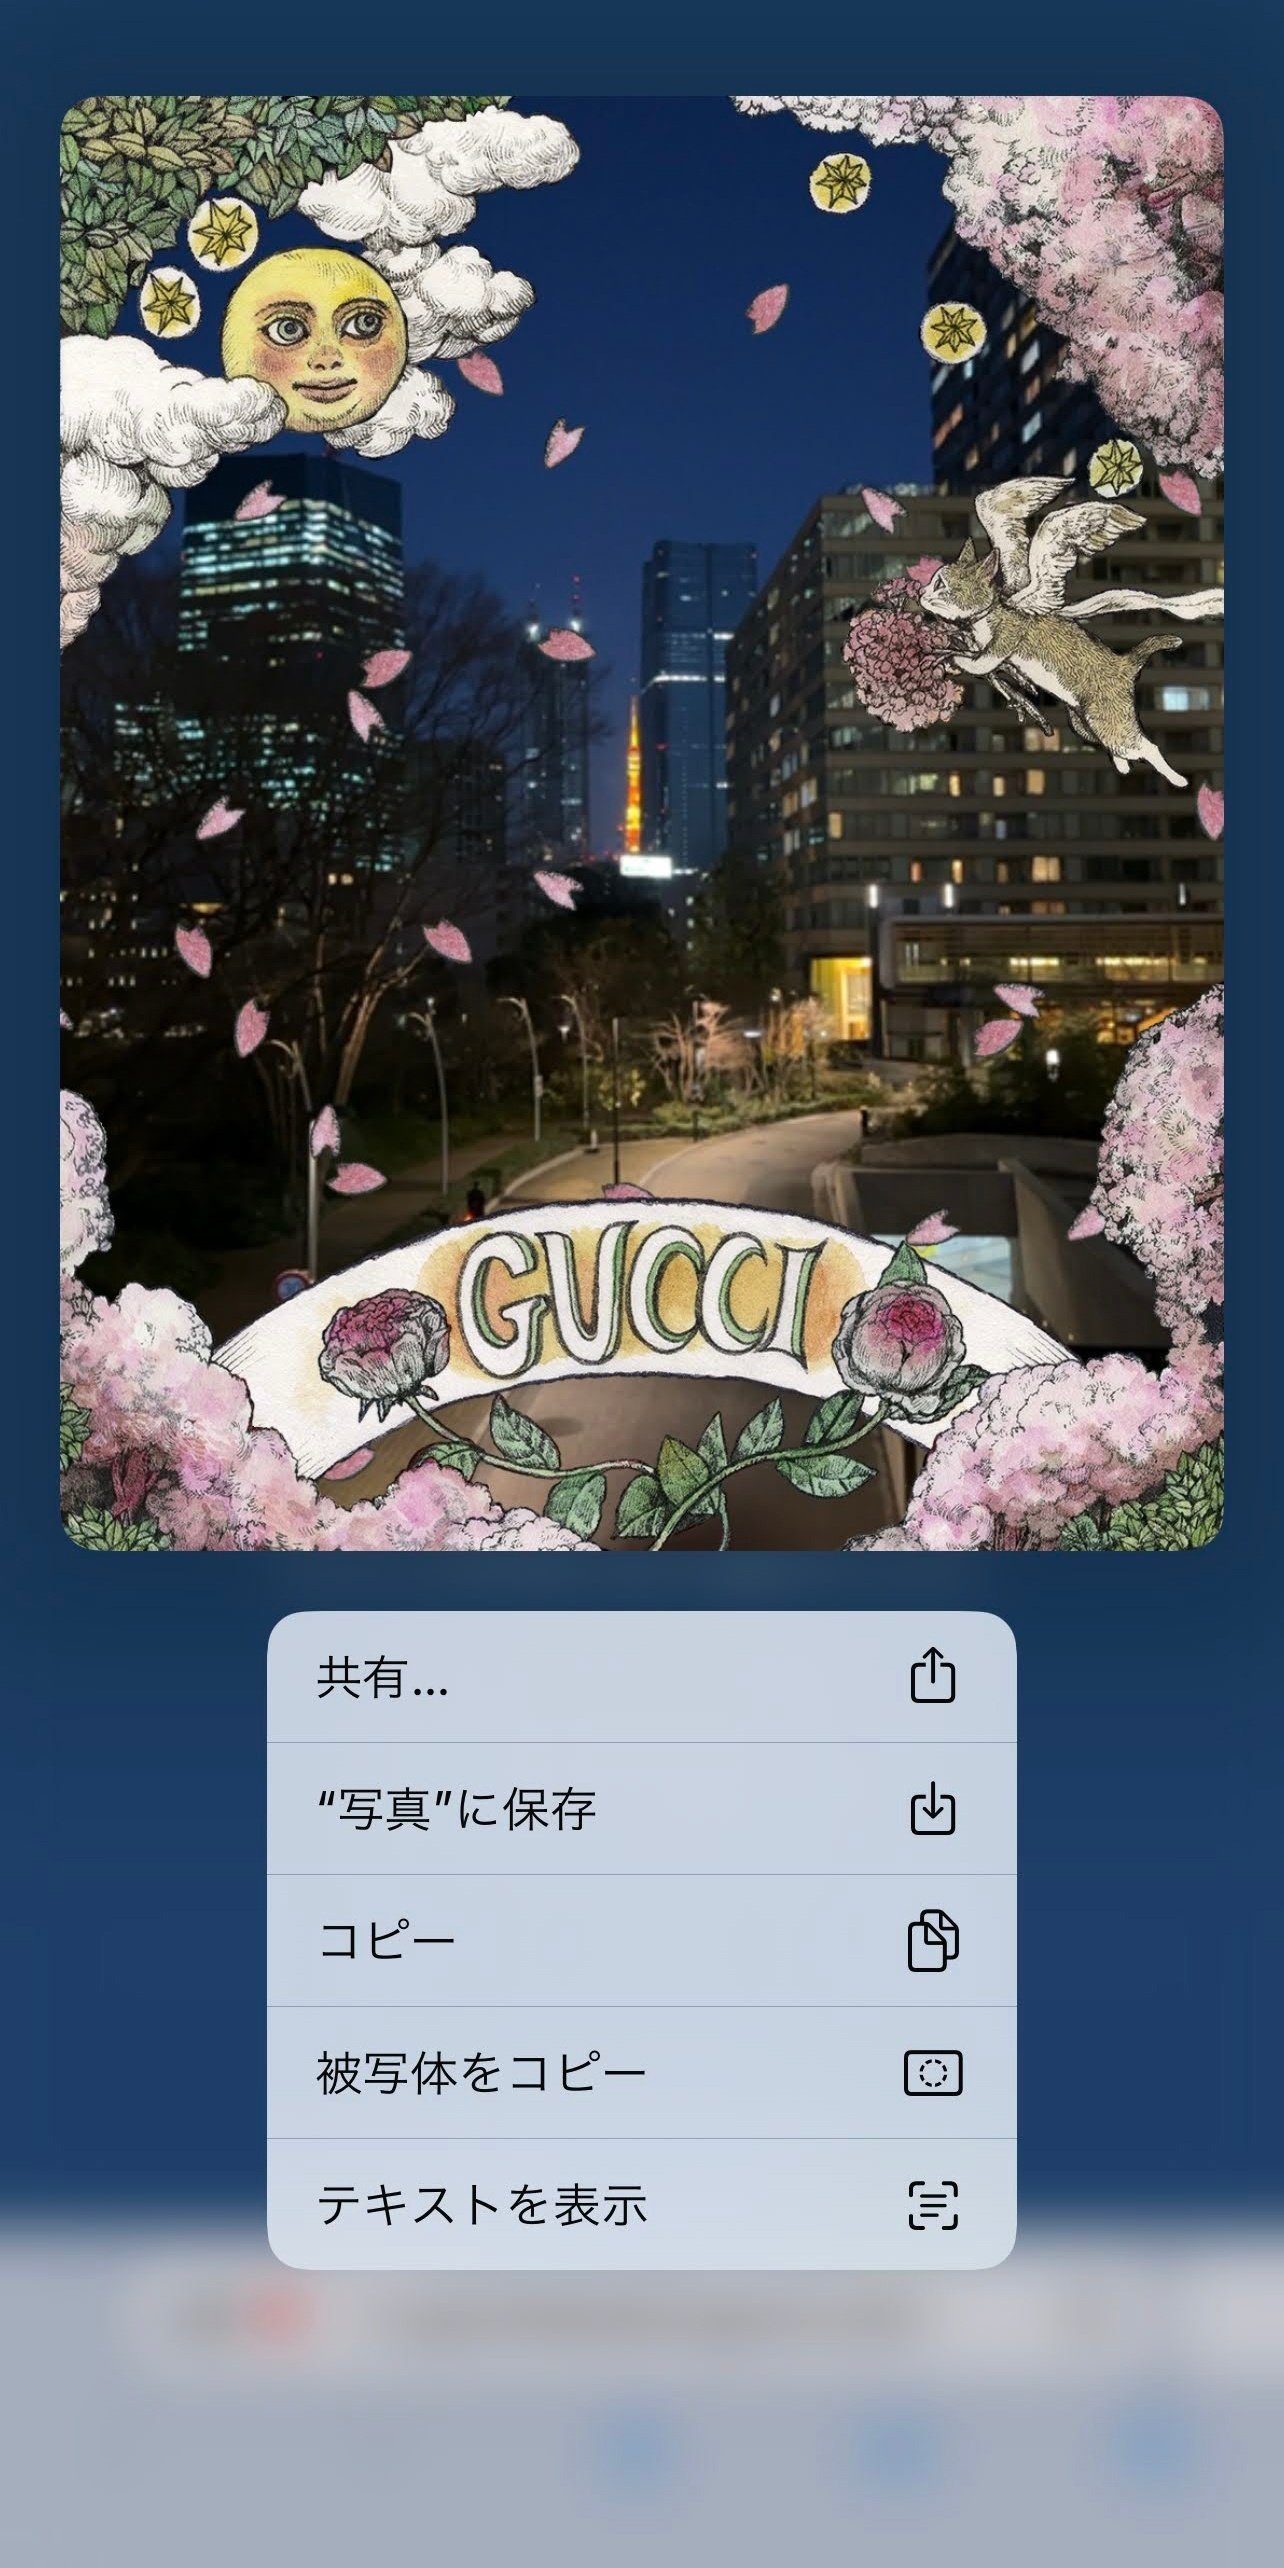 「Gucci Hanami」で、ヒグチユウコさん描き下ろしの”ARフォト